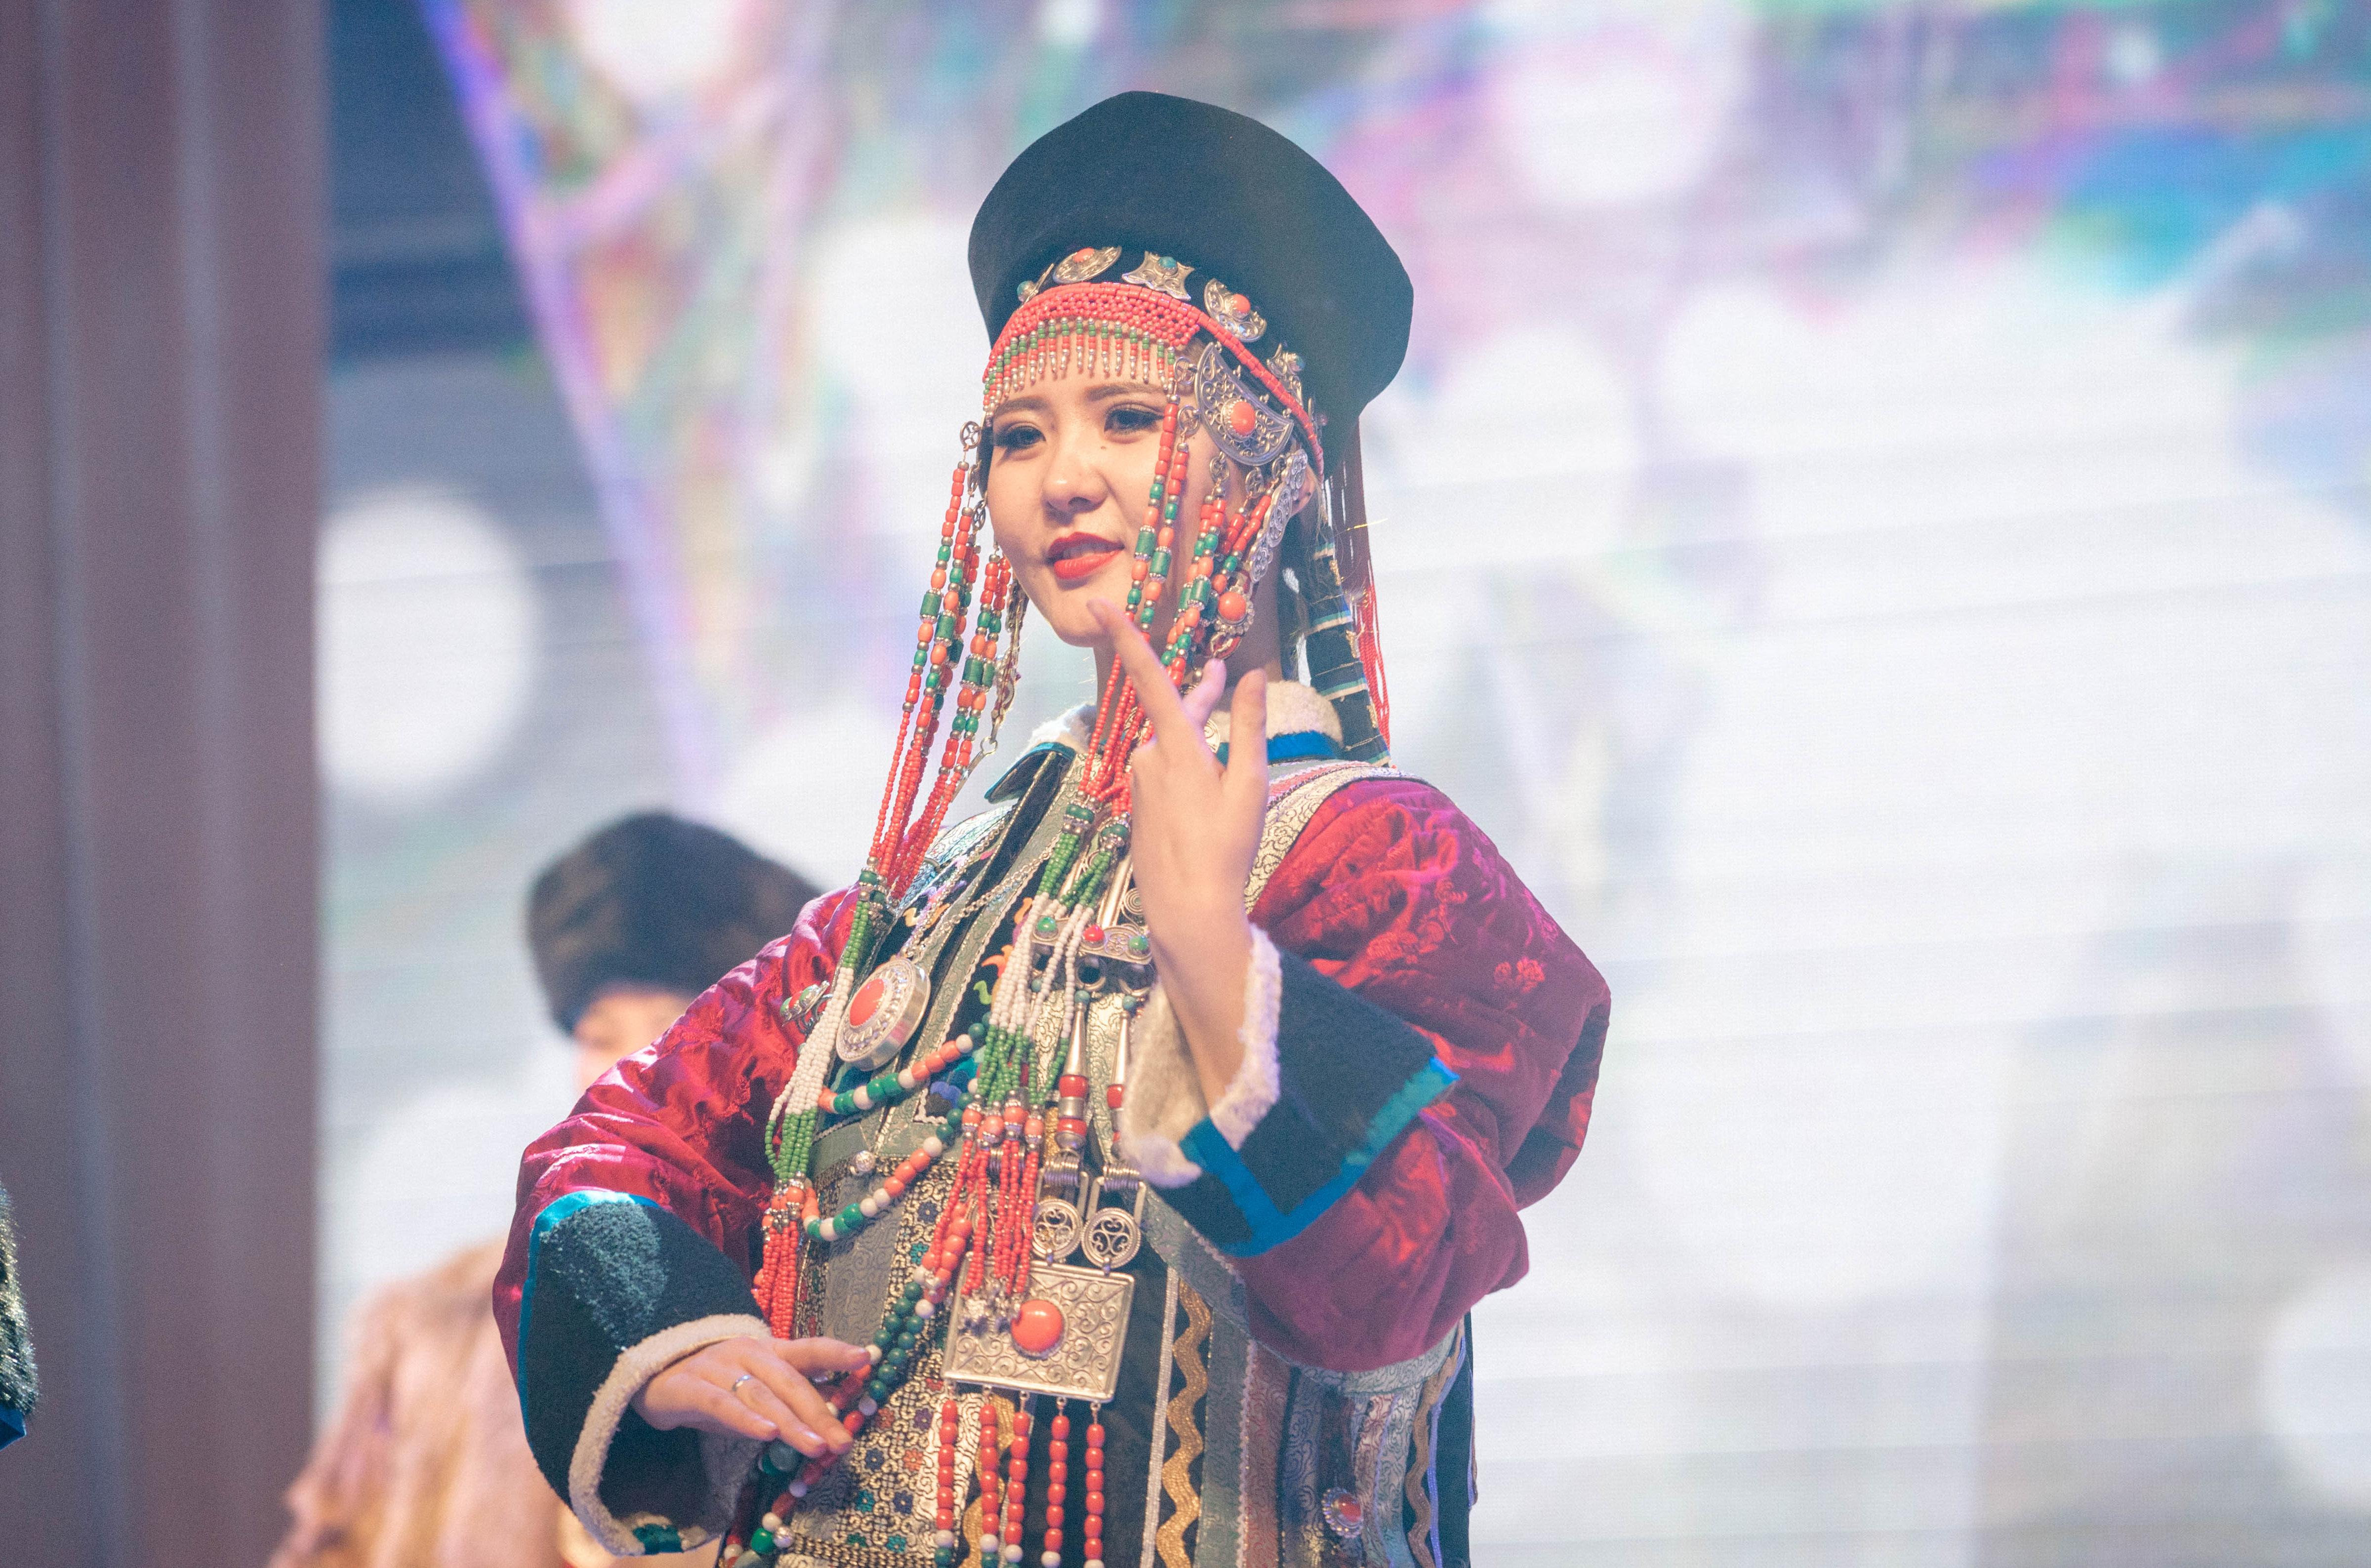 穿蒙古服饰的姑娘，简直太美了....-草原元素---蒙古元素 Mongolia Elements